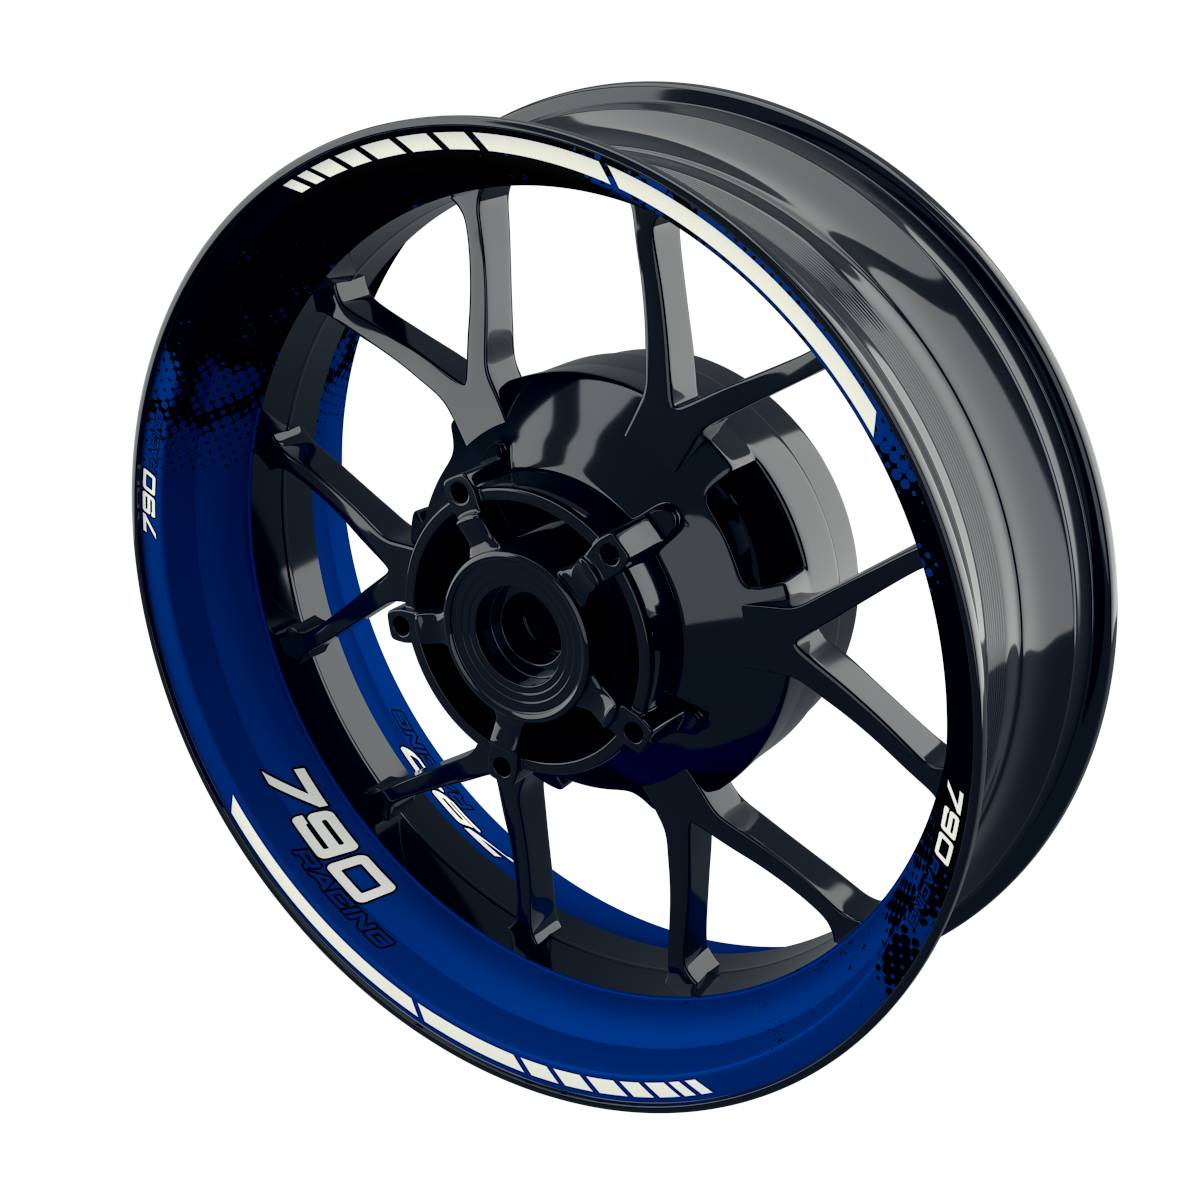 790 Racing Rim Decals DOTS Wheelsticker Premium